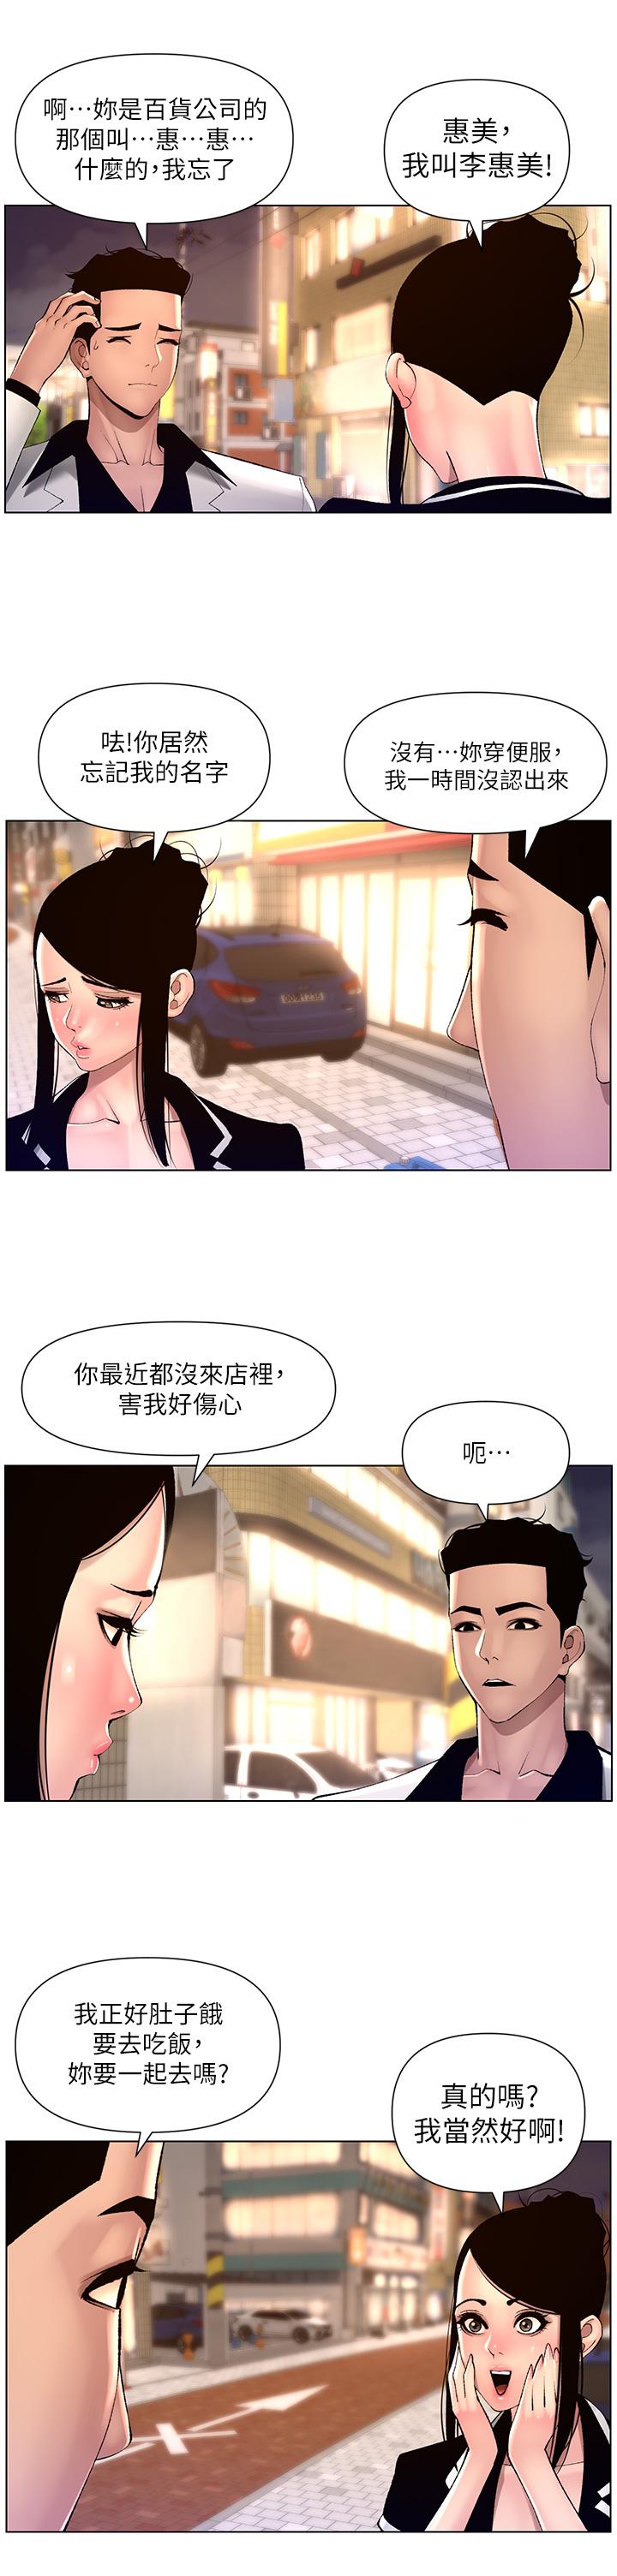 韩国污漫画 帝王App 第83话-久违的平凡性爱 19